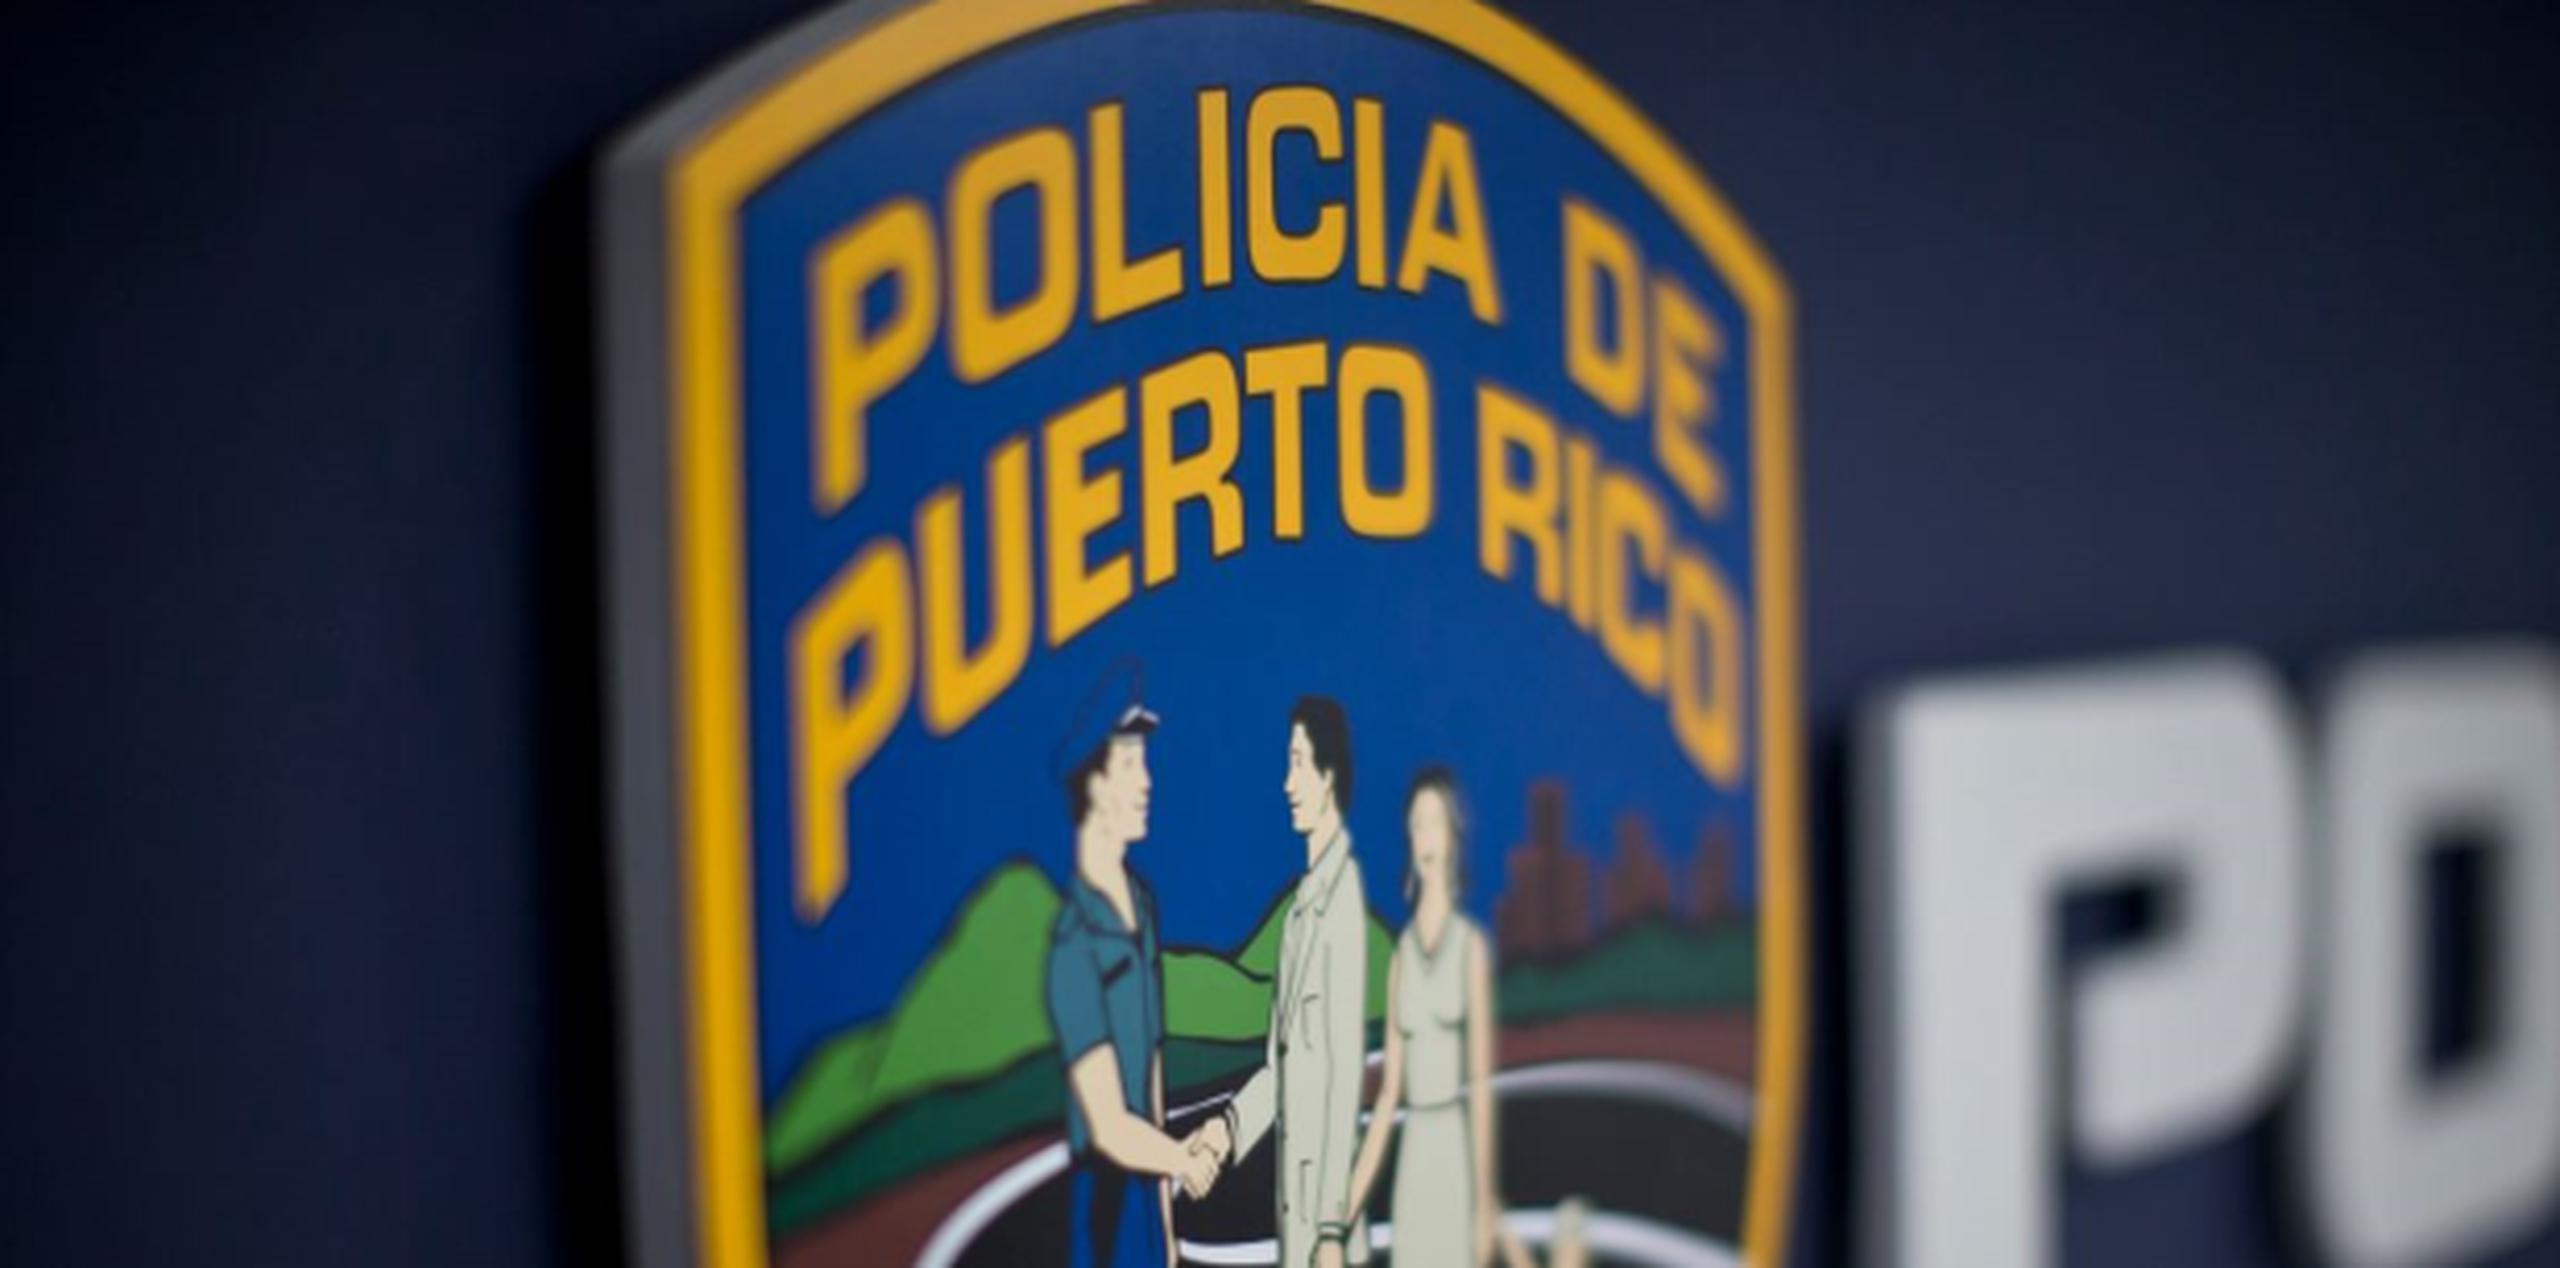 La querella fue referida a la División de Delitos Sexuales del área de Ponce. (Archivo)